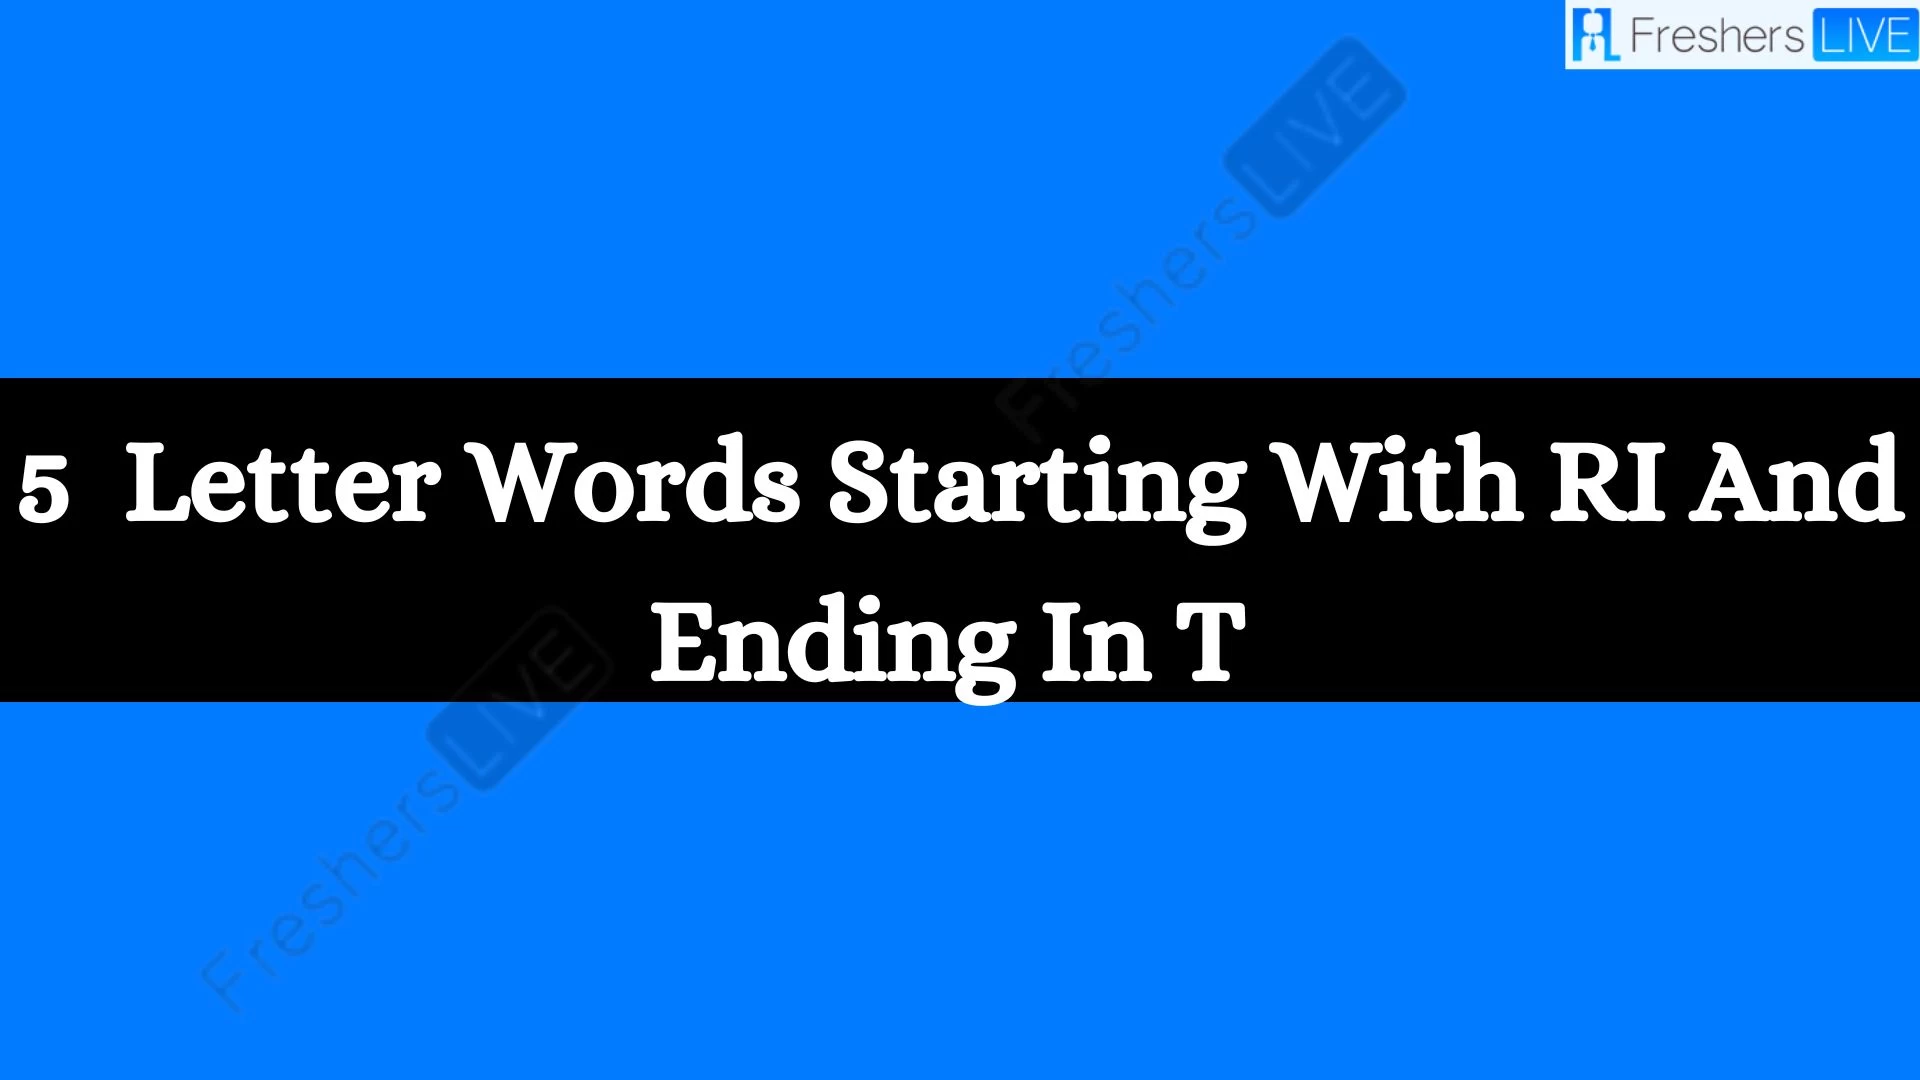 5 - Palabras con letras que comienzan con RI y terminan con T. Lista de todas las palabras.